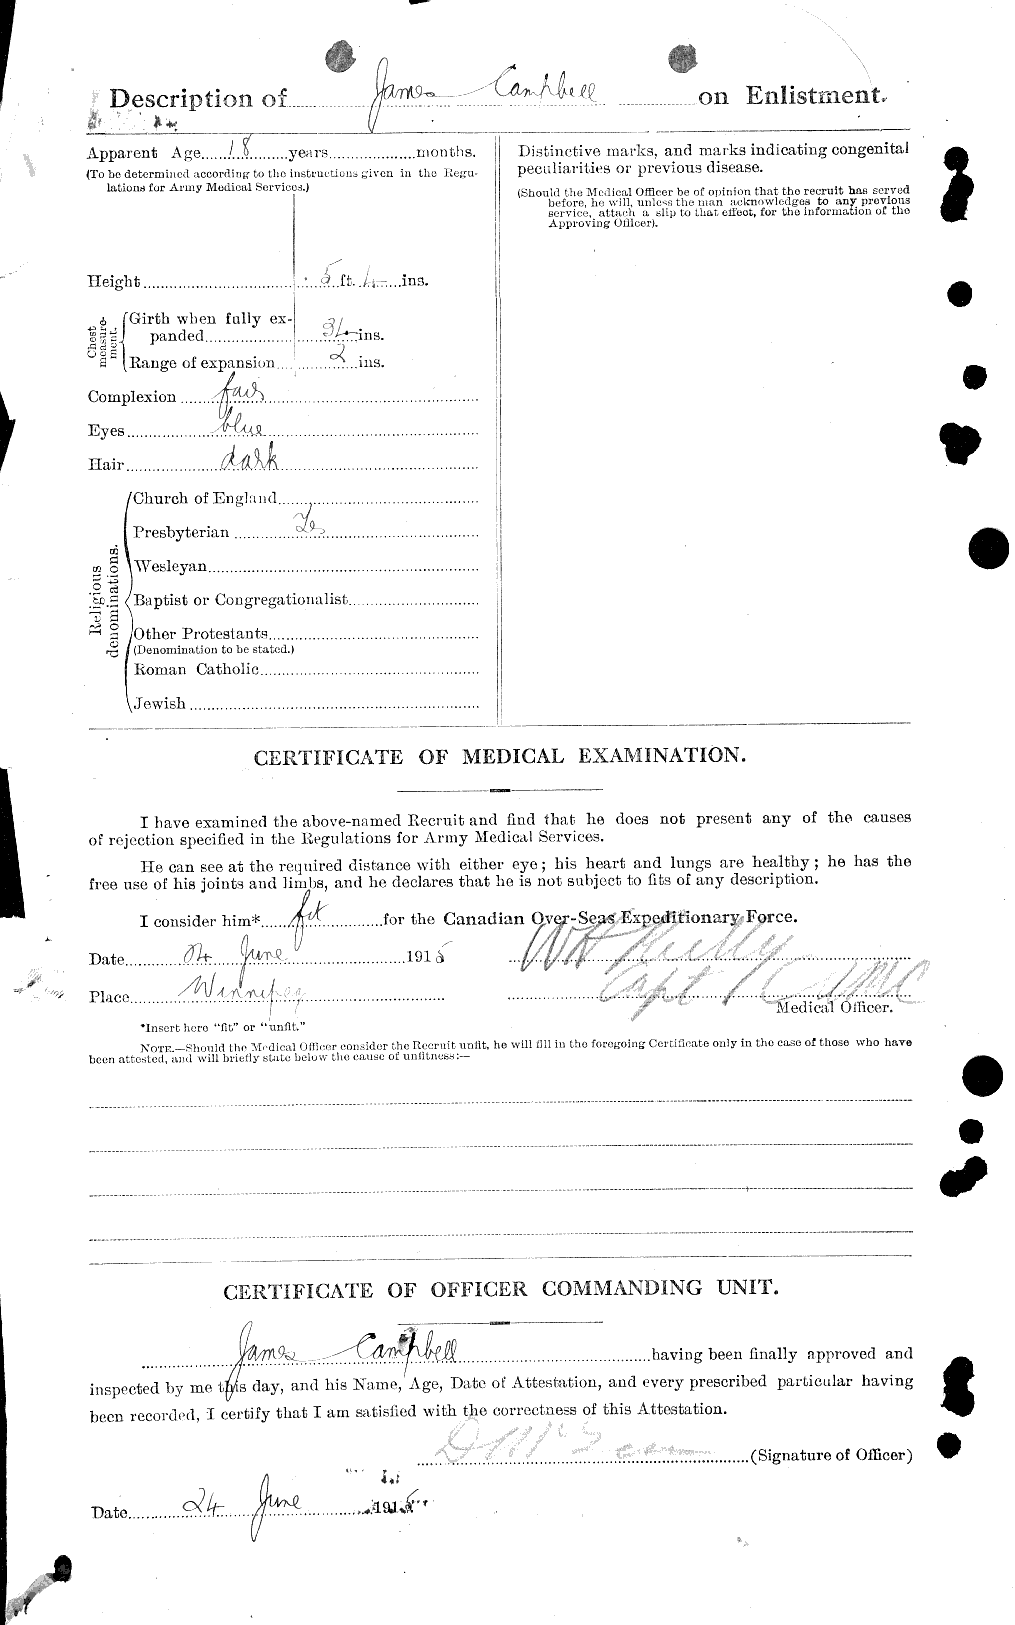 Dossiers du Personnel de la Première Guerre mondiale - CEC 006734b